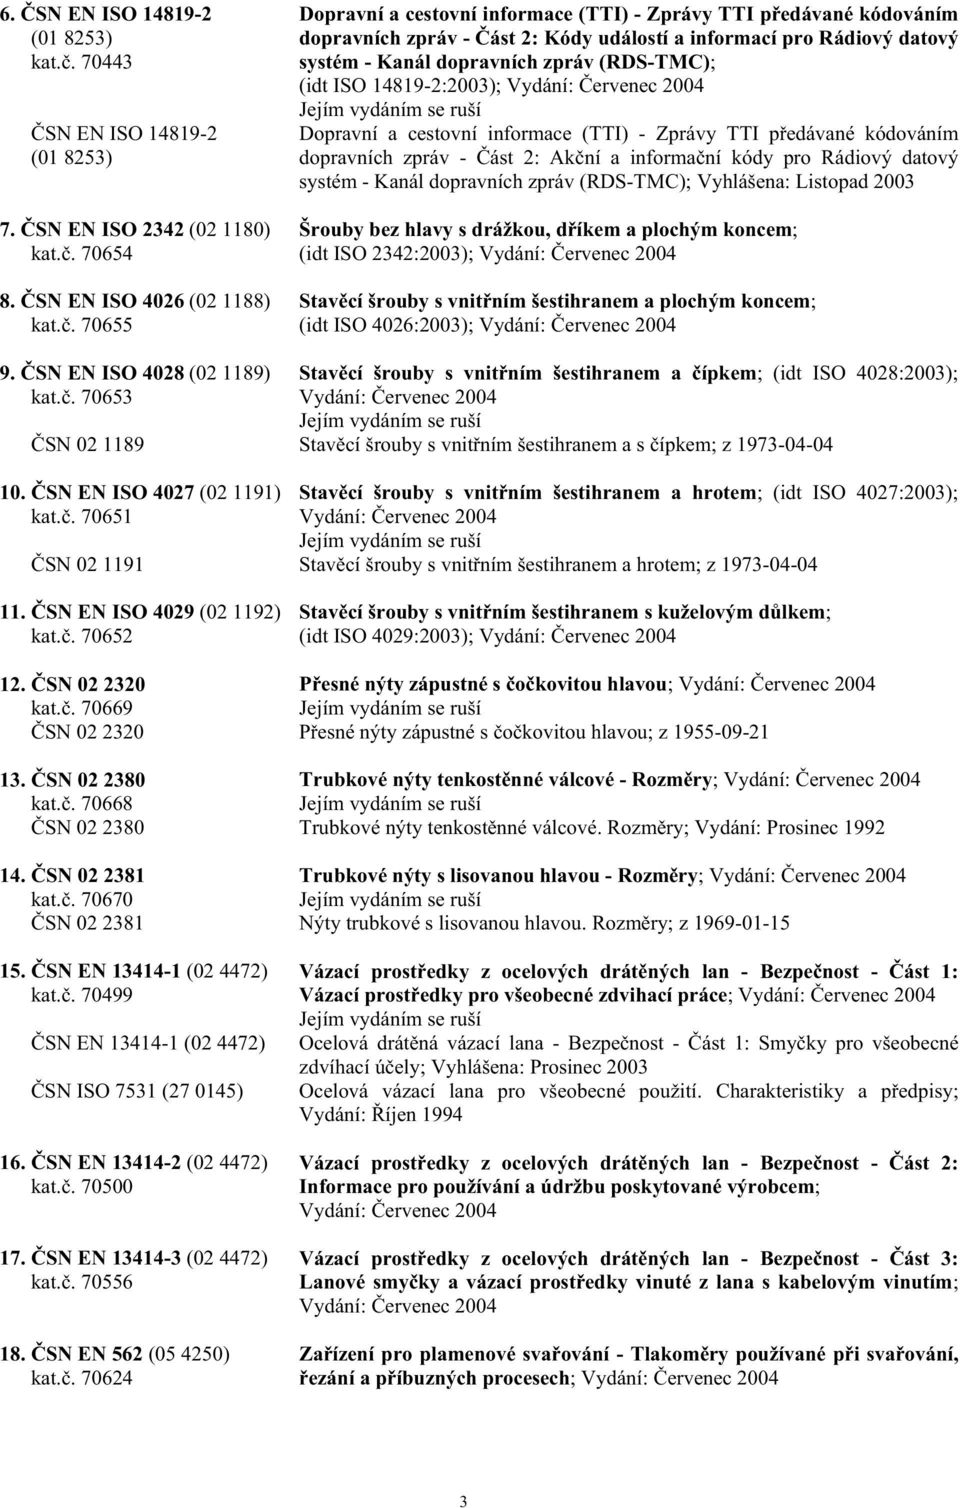 14819-2:2003); Dopravní a cestovní informace (TTI) - Zprávy TTI p edávané kódováním dopravních zpráv - ást 2: Ak ní a informa ní kódy pro Rádiový datový systém - Kanál dopravních zpráv (RDS-TMC);